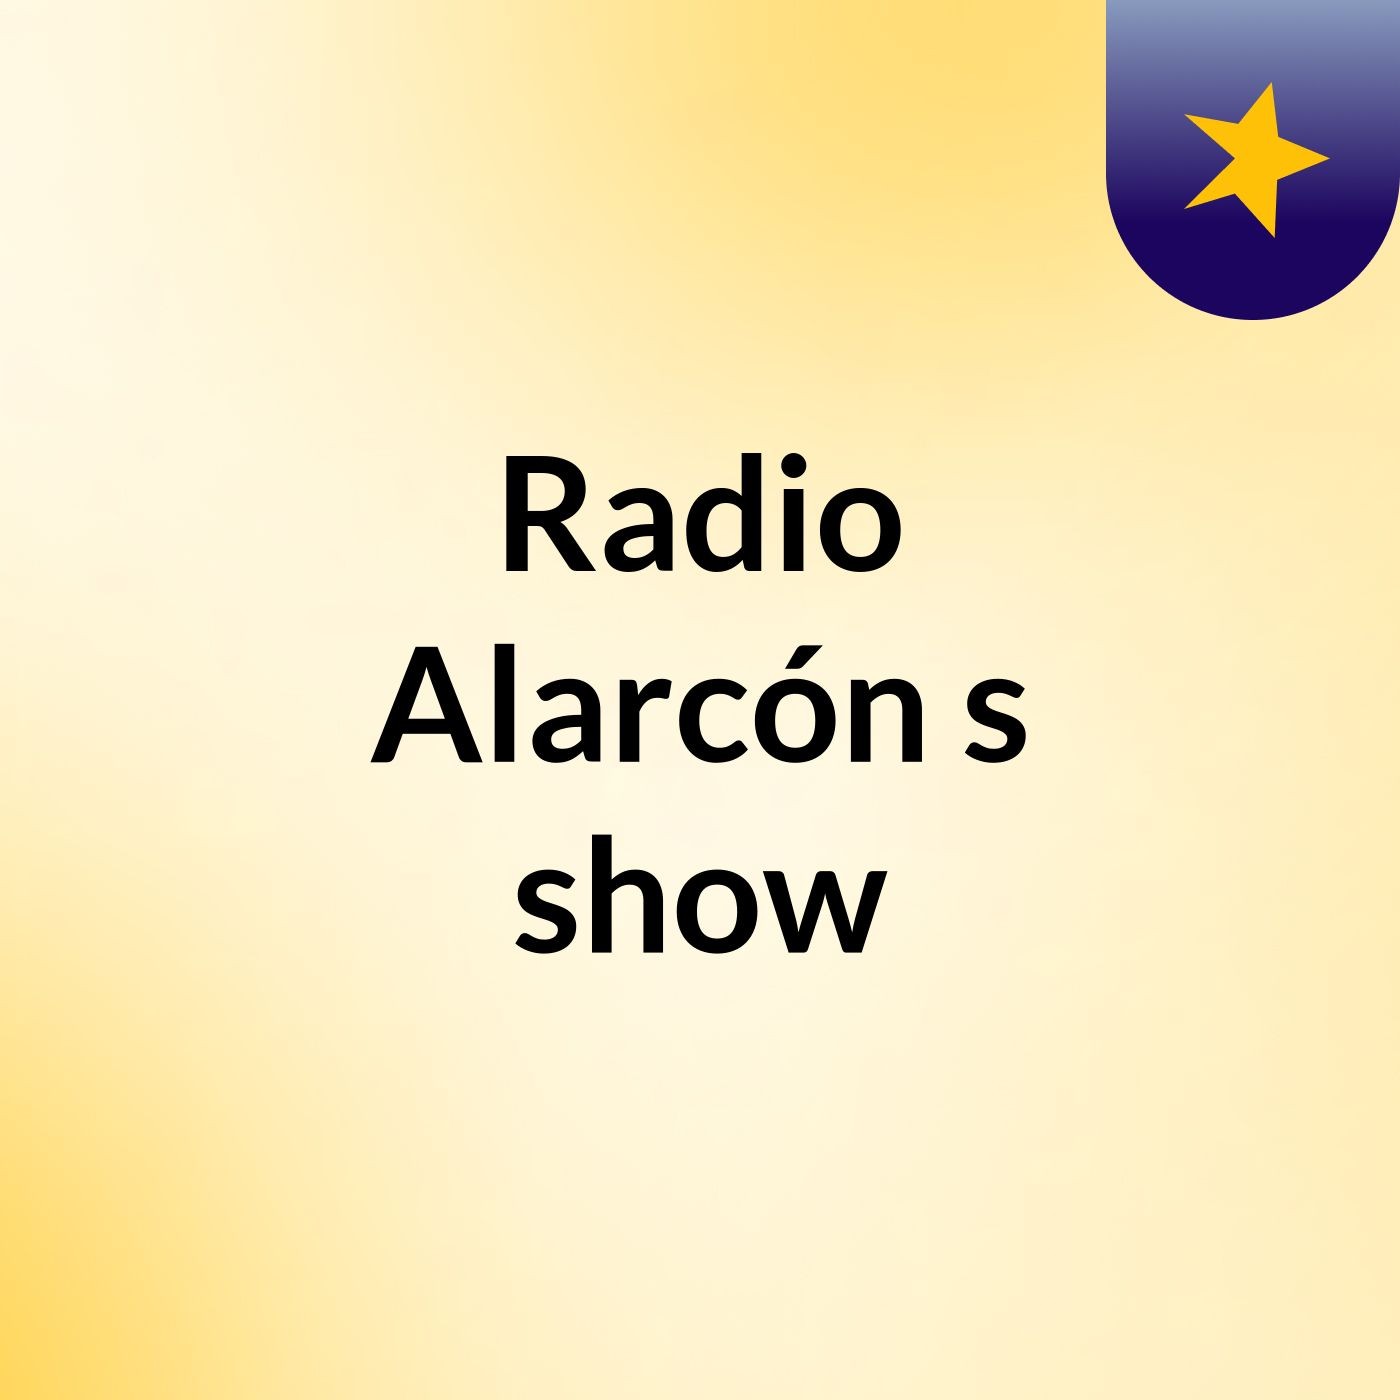 Radio Alarcón's show